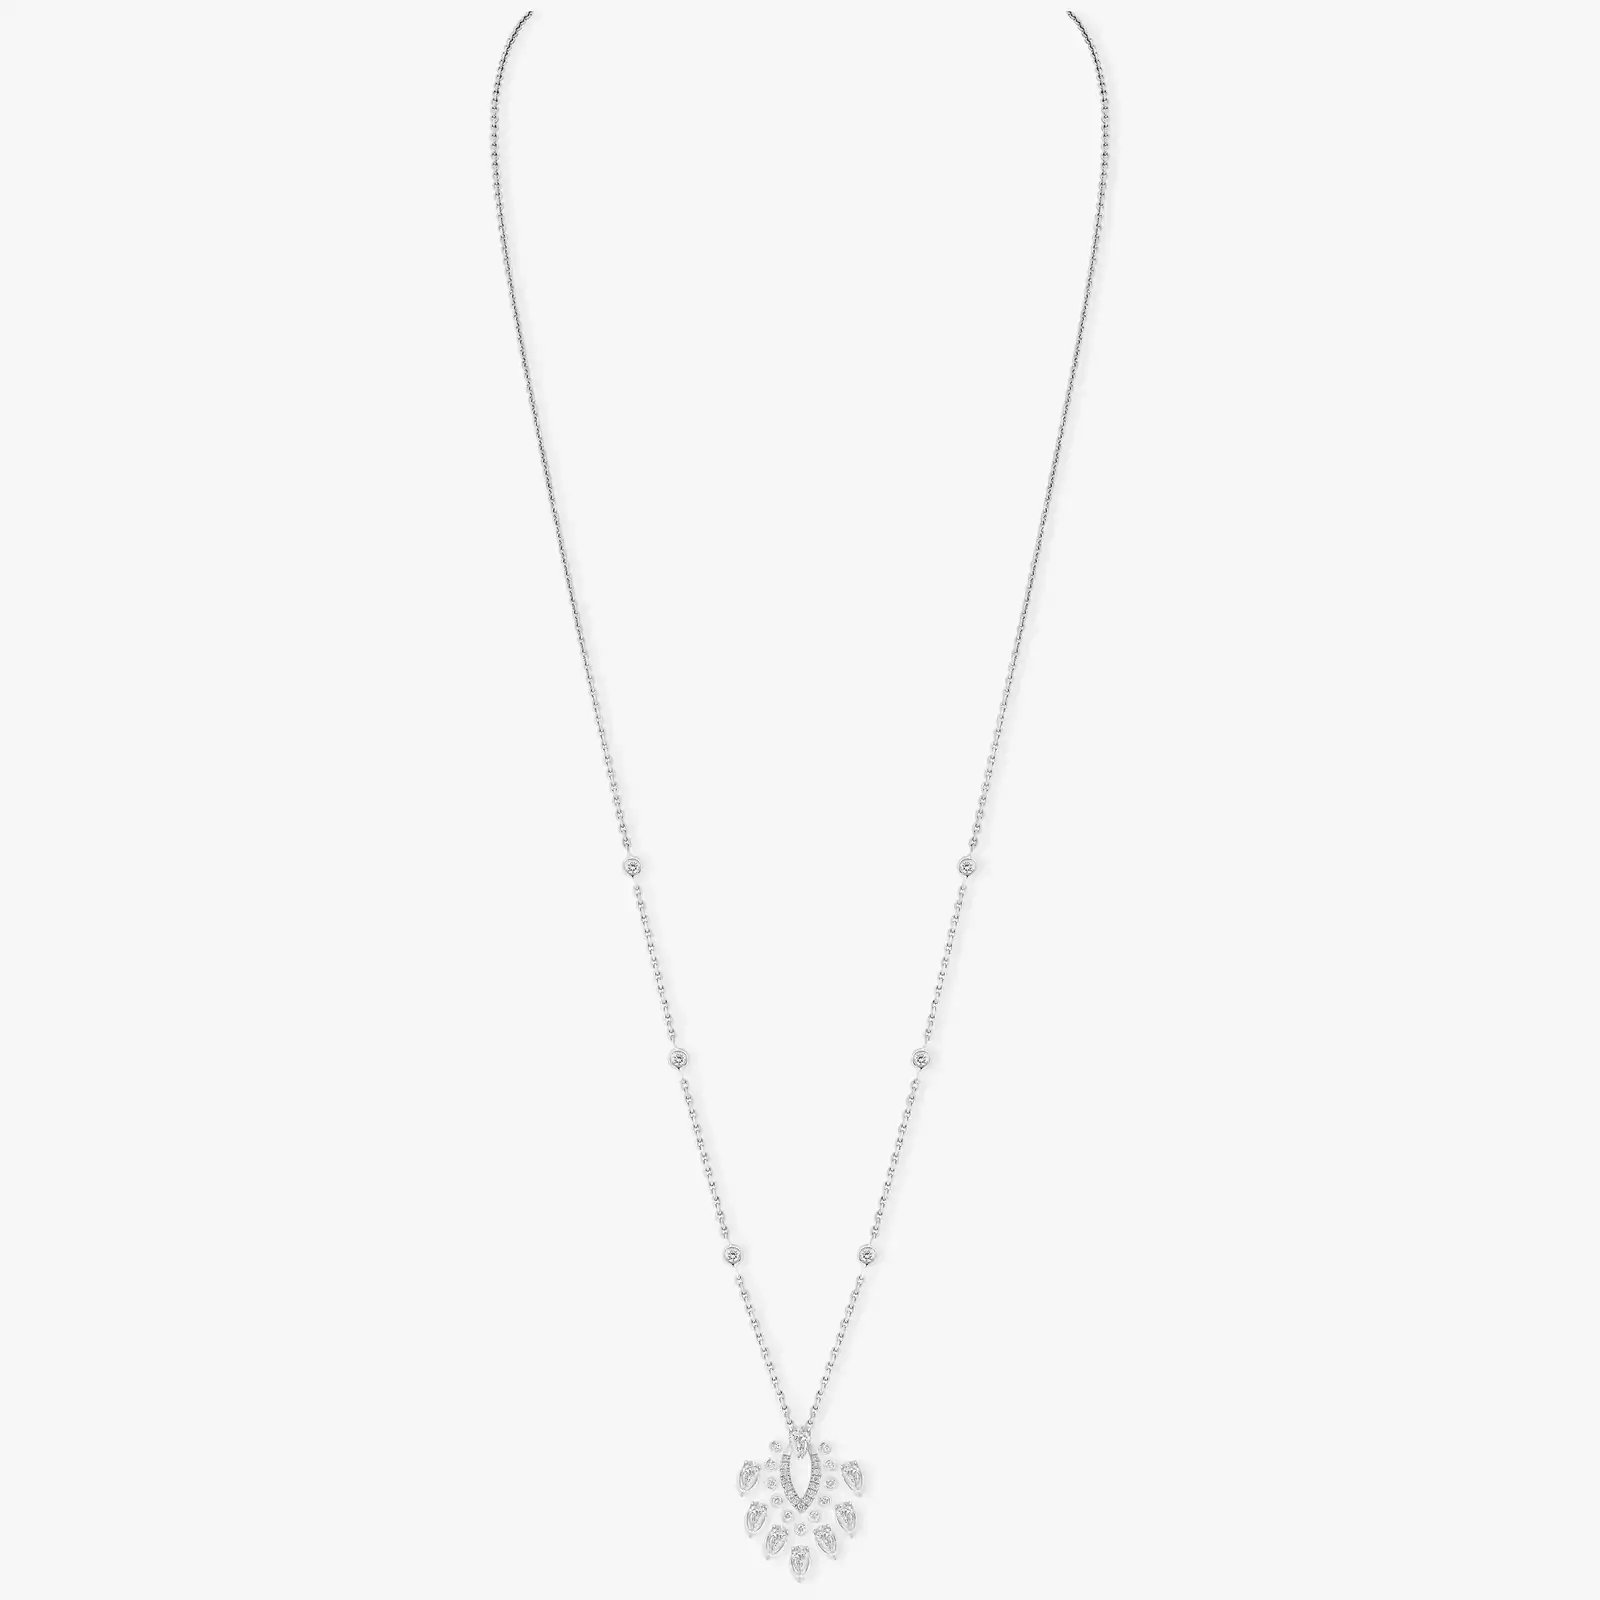 Pendant Desert Bloom White Gold For Her Diamond Necklace 07359-WG